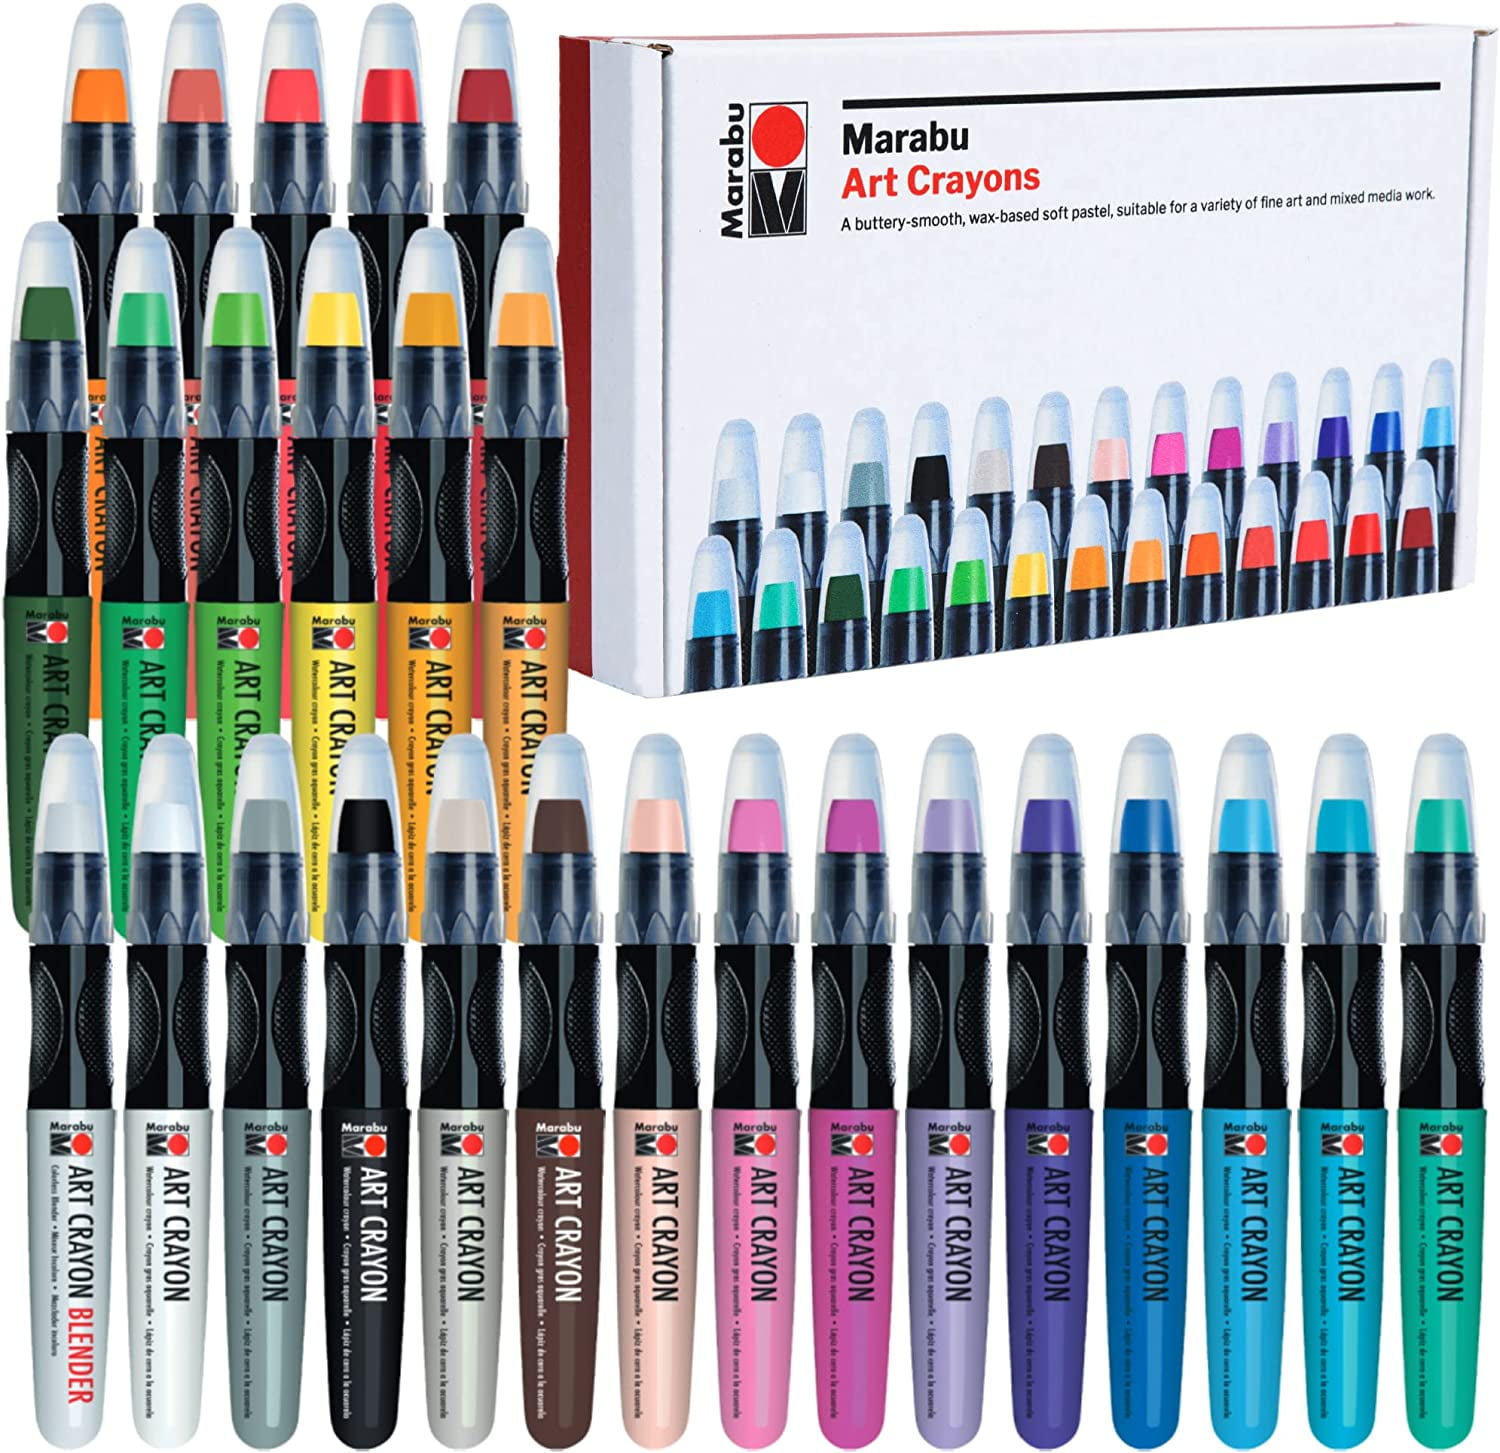 Marabu Art Crayons: Get Your Color Fix - MacKendrew Arts